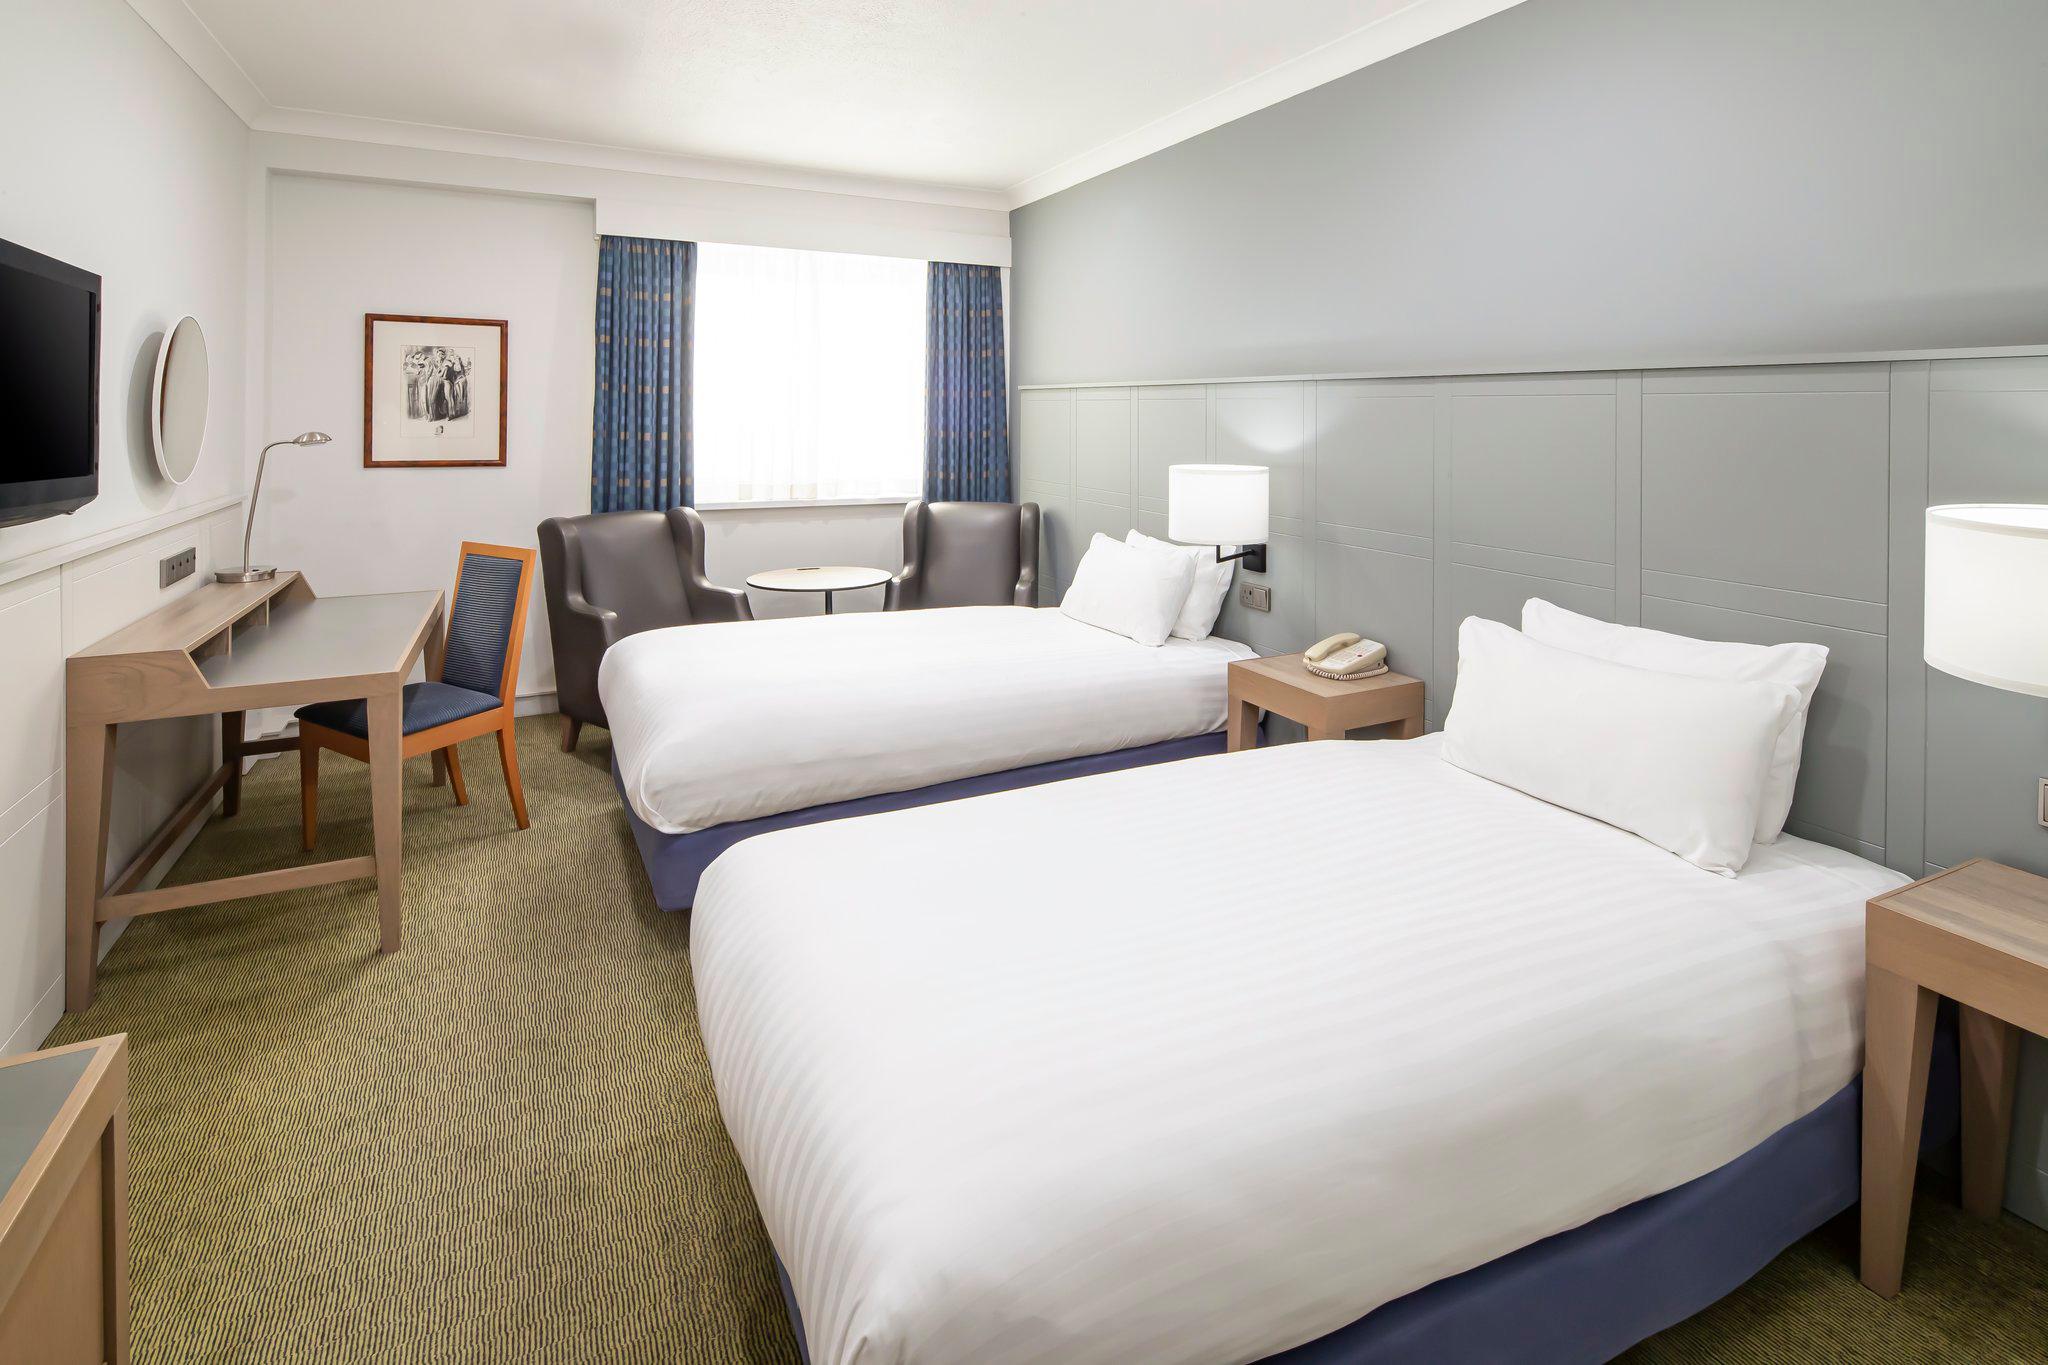 Holiday Inn Hull Marina, an IHG Hotel Kingston Upon Hull 01482 692600